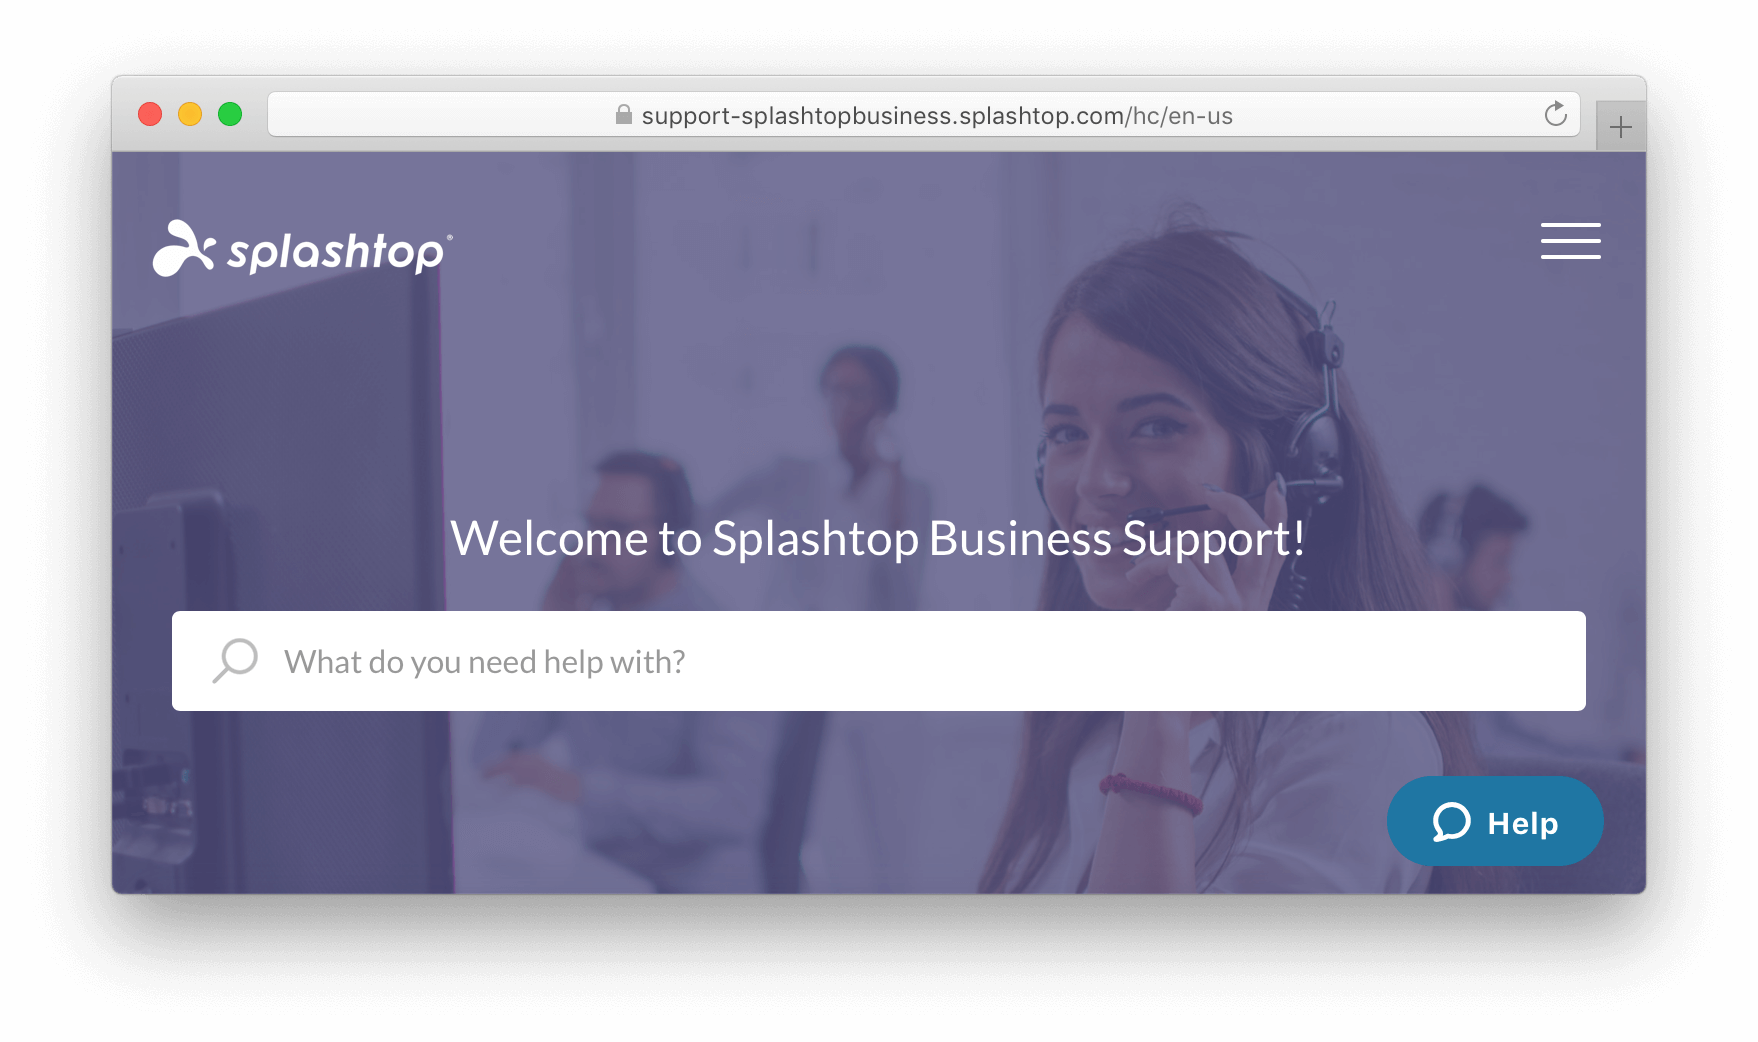 Splashtop Business Support